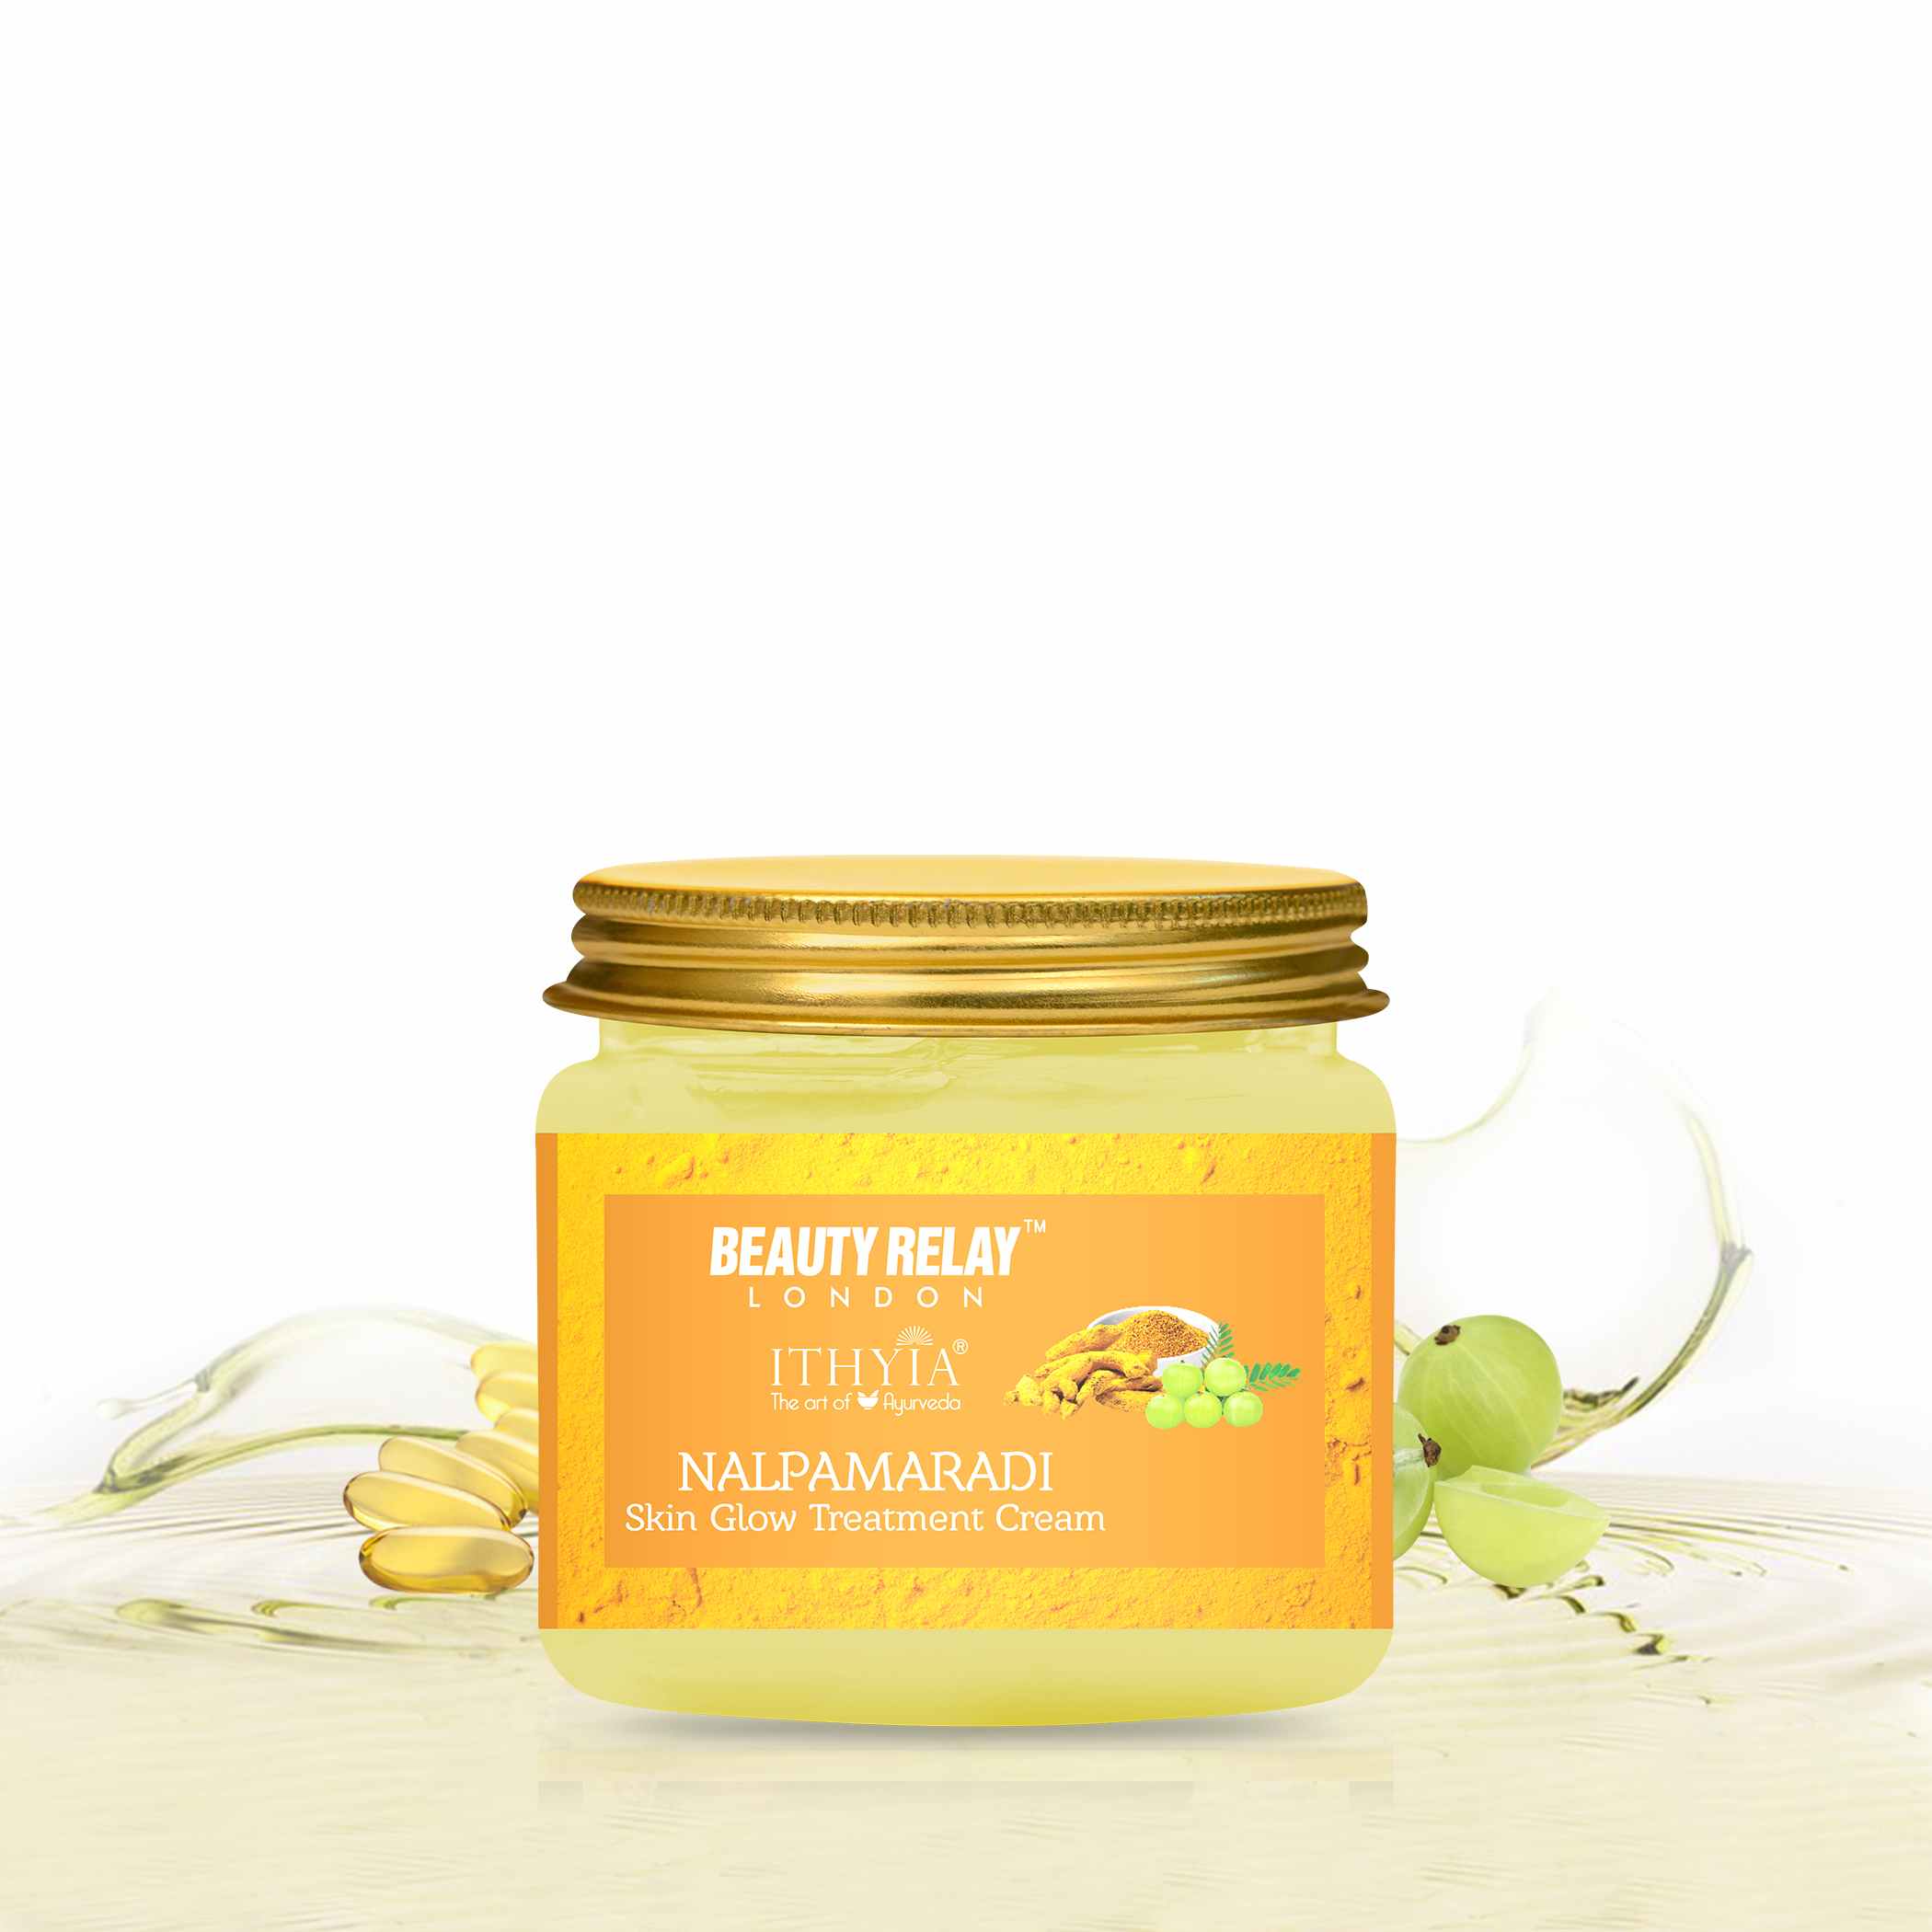 Ayurveda Skin Glow Treatment Cream with Nalpamaradi